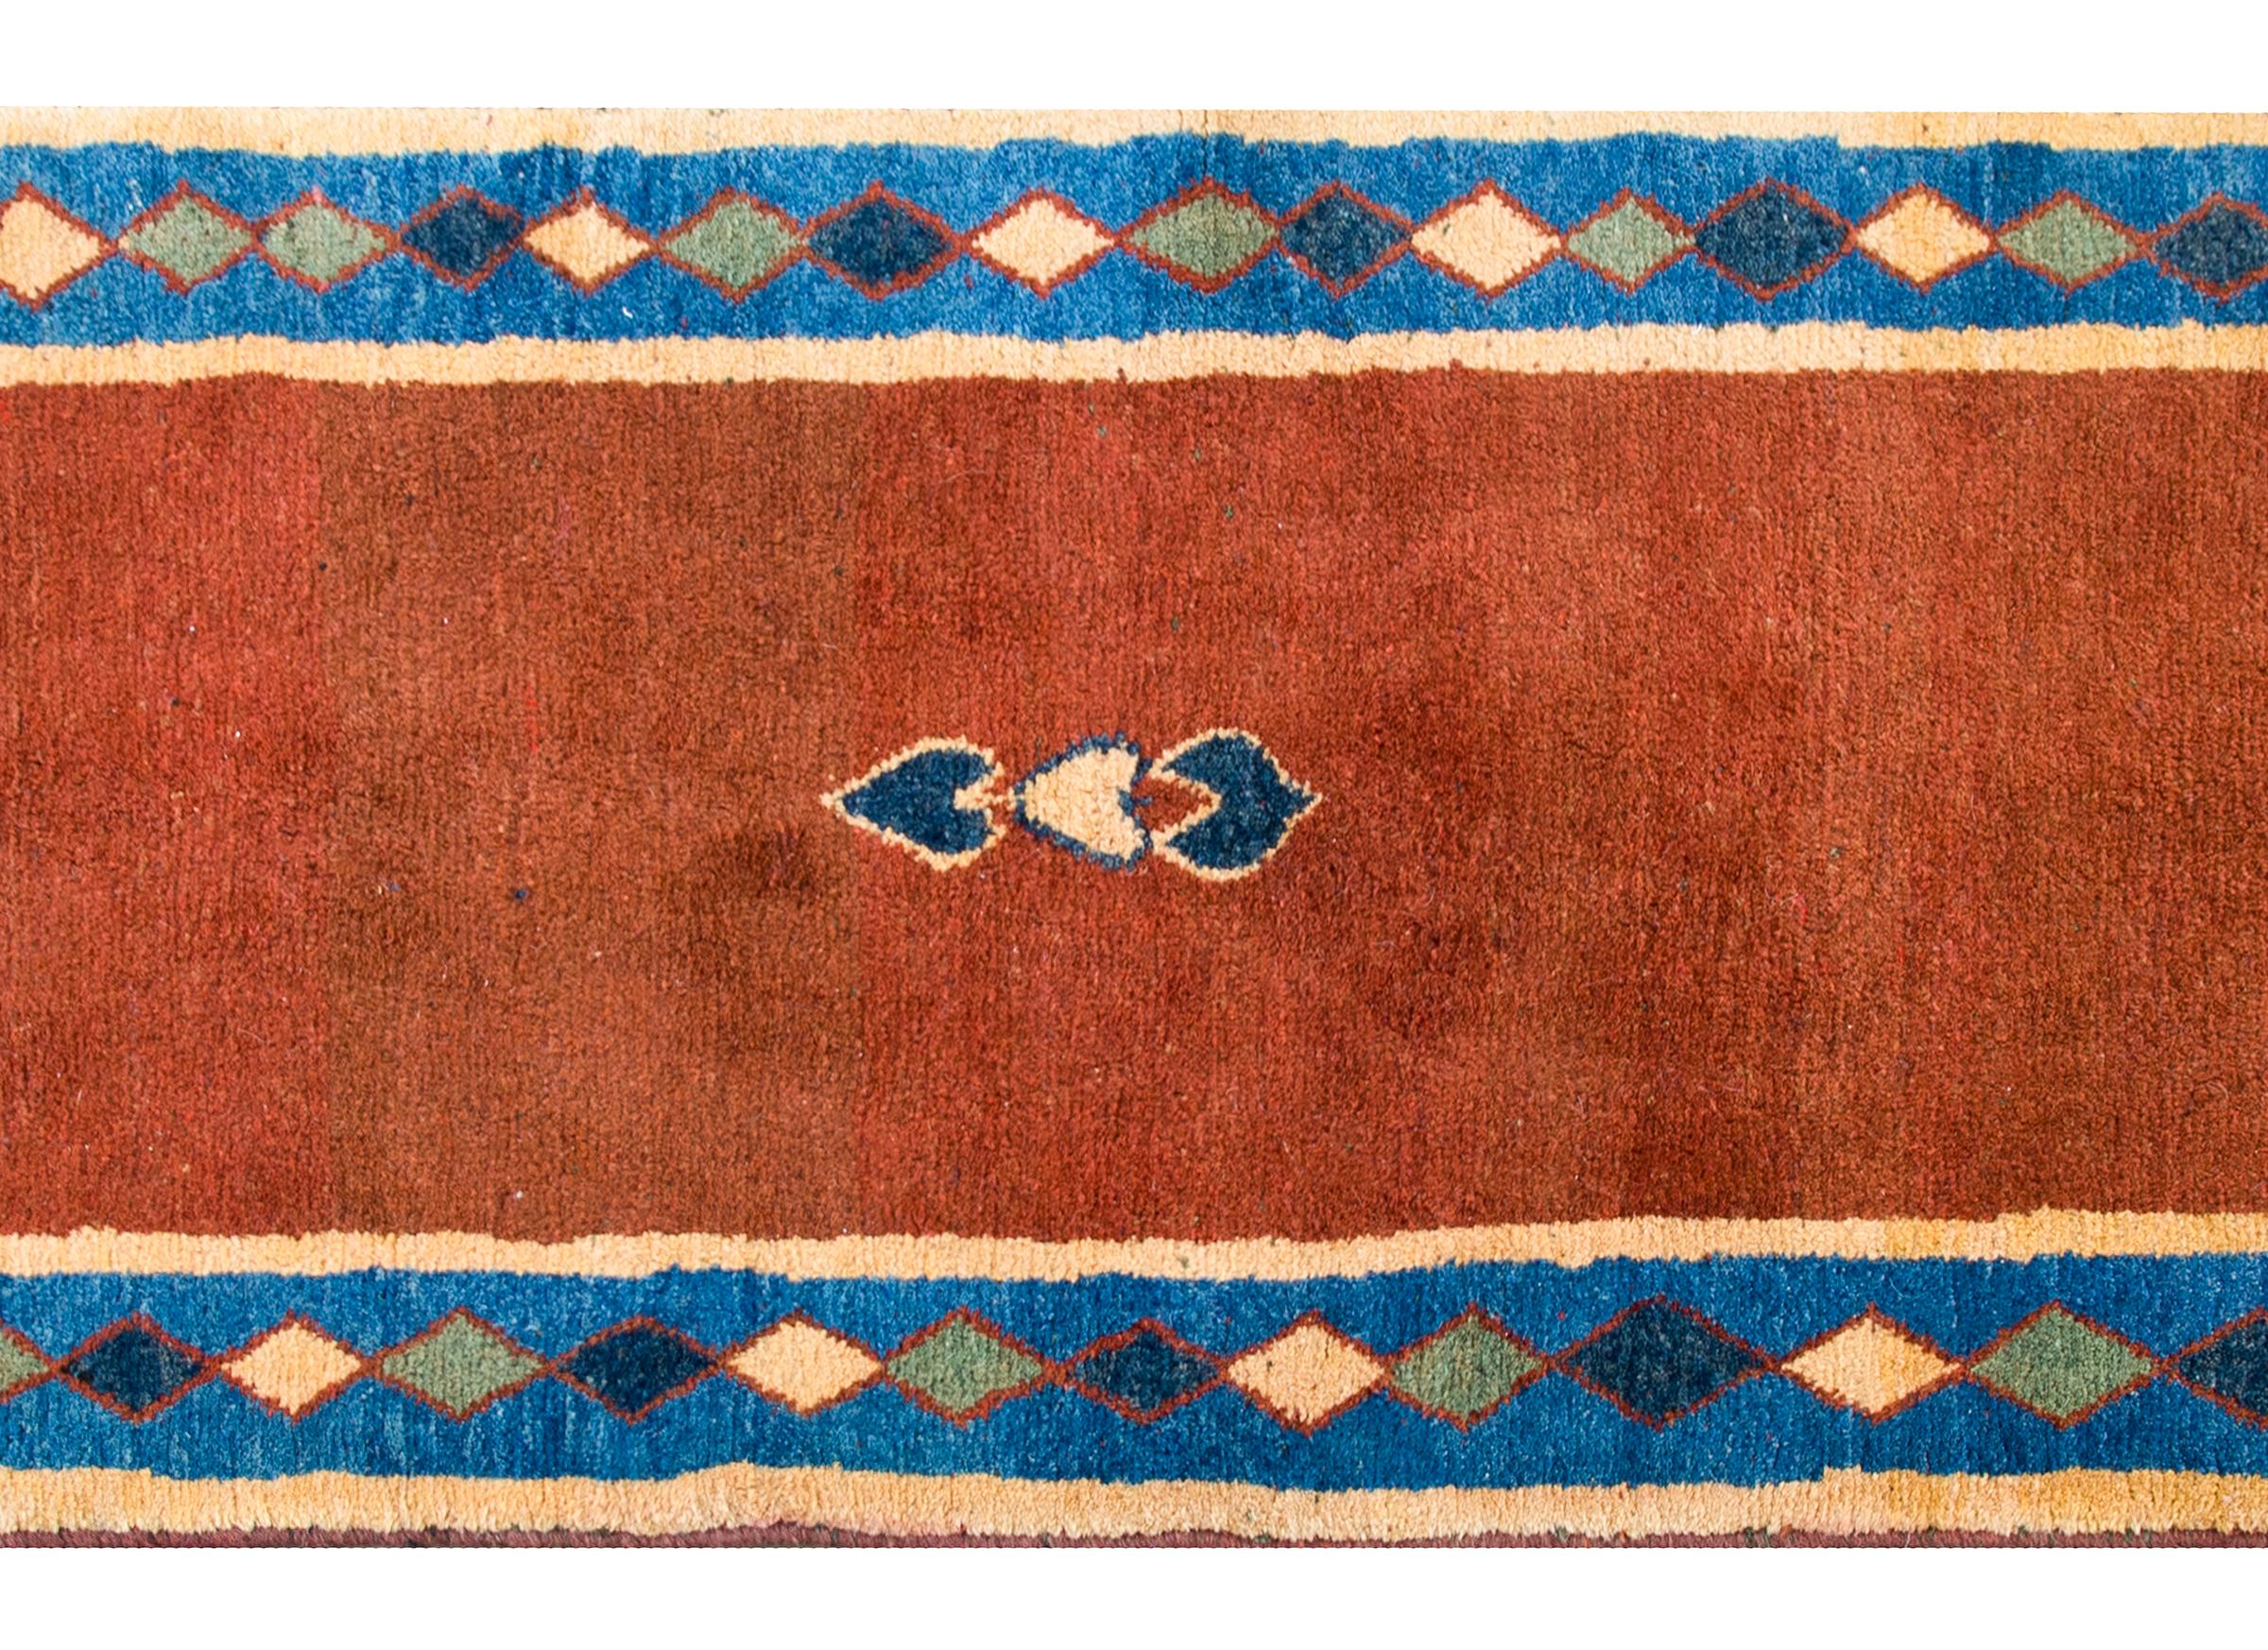 Ein fantastischer persischer Gabbeh-Teppich aus der Mitte des 20. Jahrhunderts mit einem orangefarbenen Feld mit drei kleinen stilisierten Blättern in der Mitte, umgeben von einer Harlekin-Rautenbordüre in Indigo, Gold, Grün und einem dünnen roten